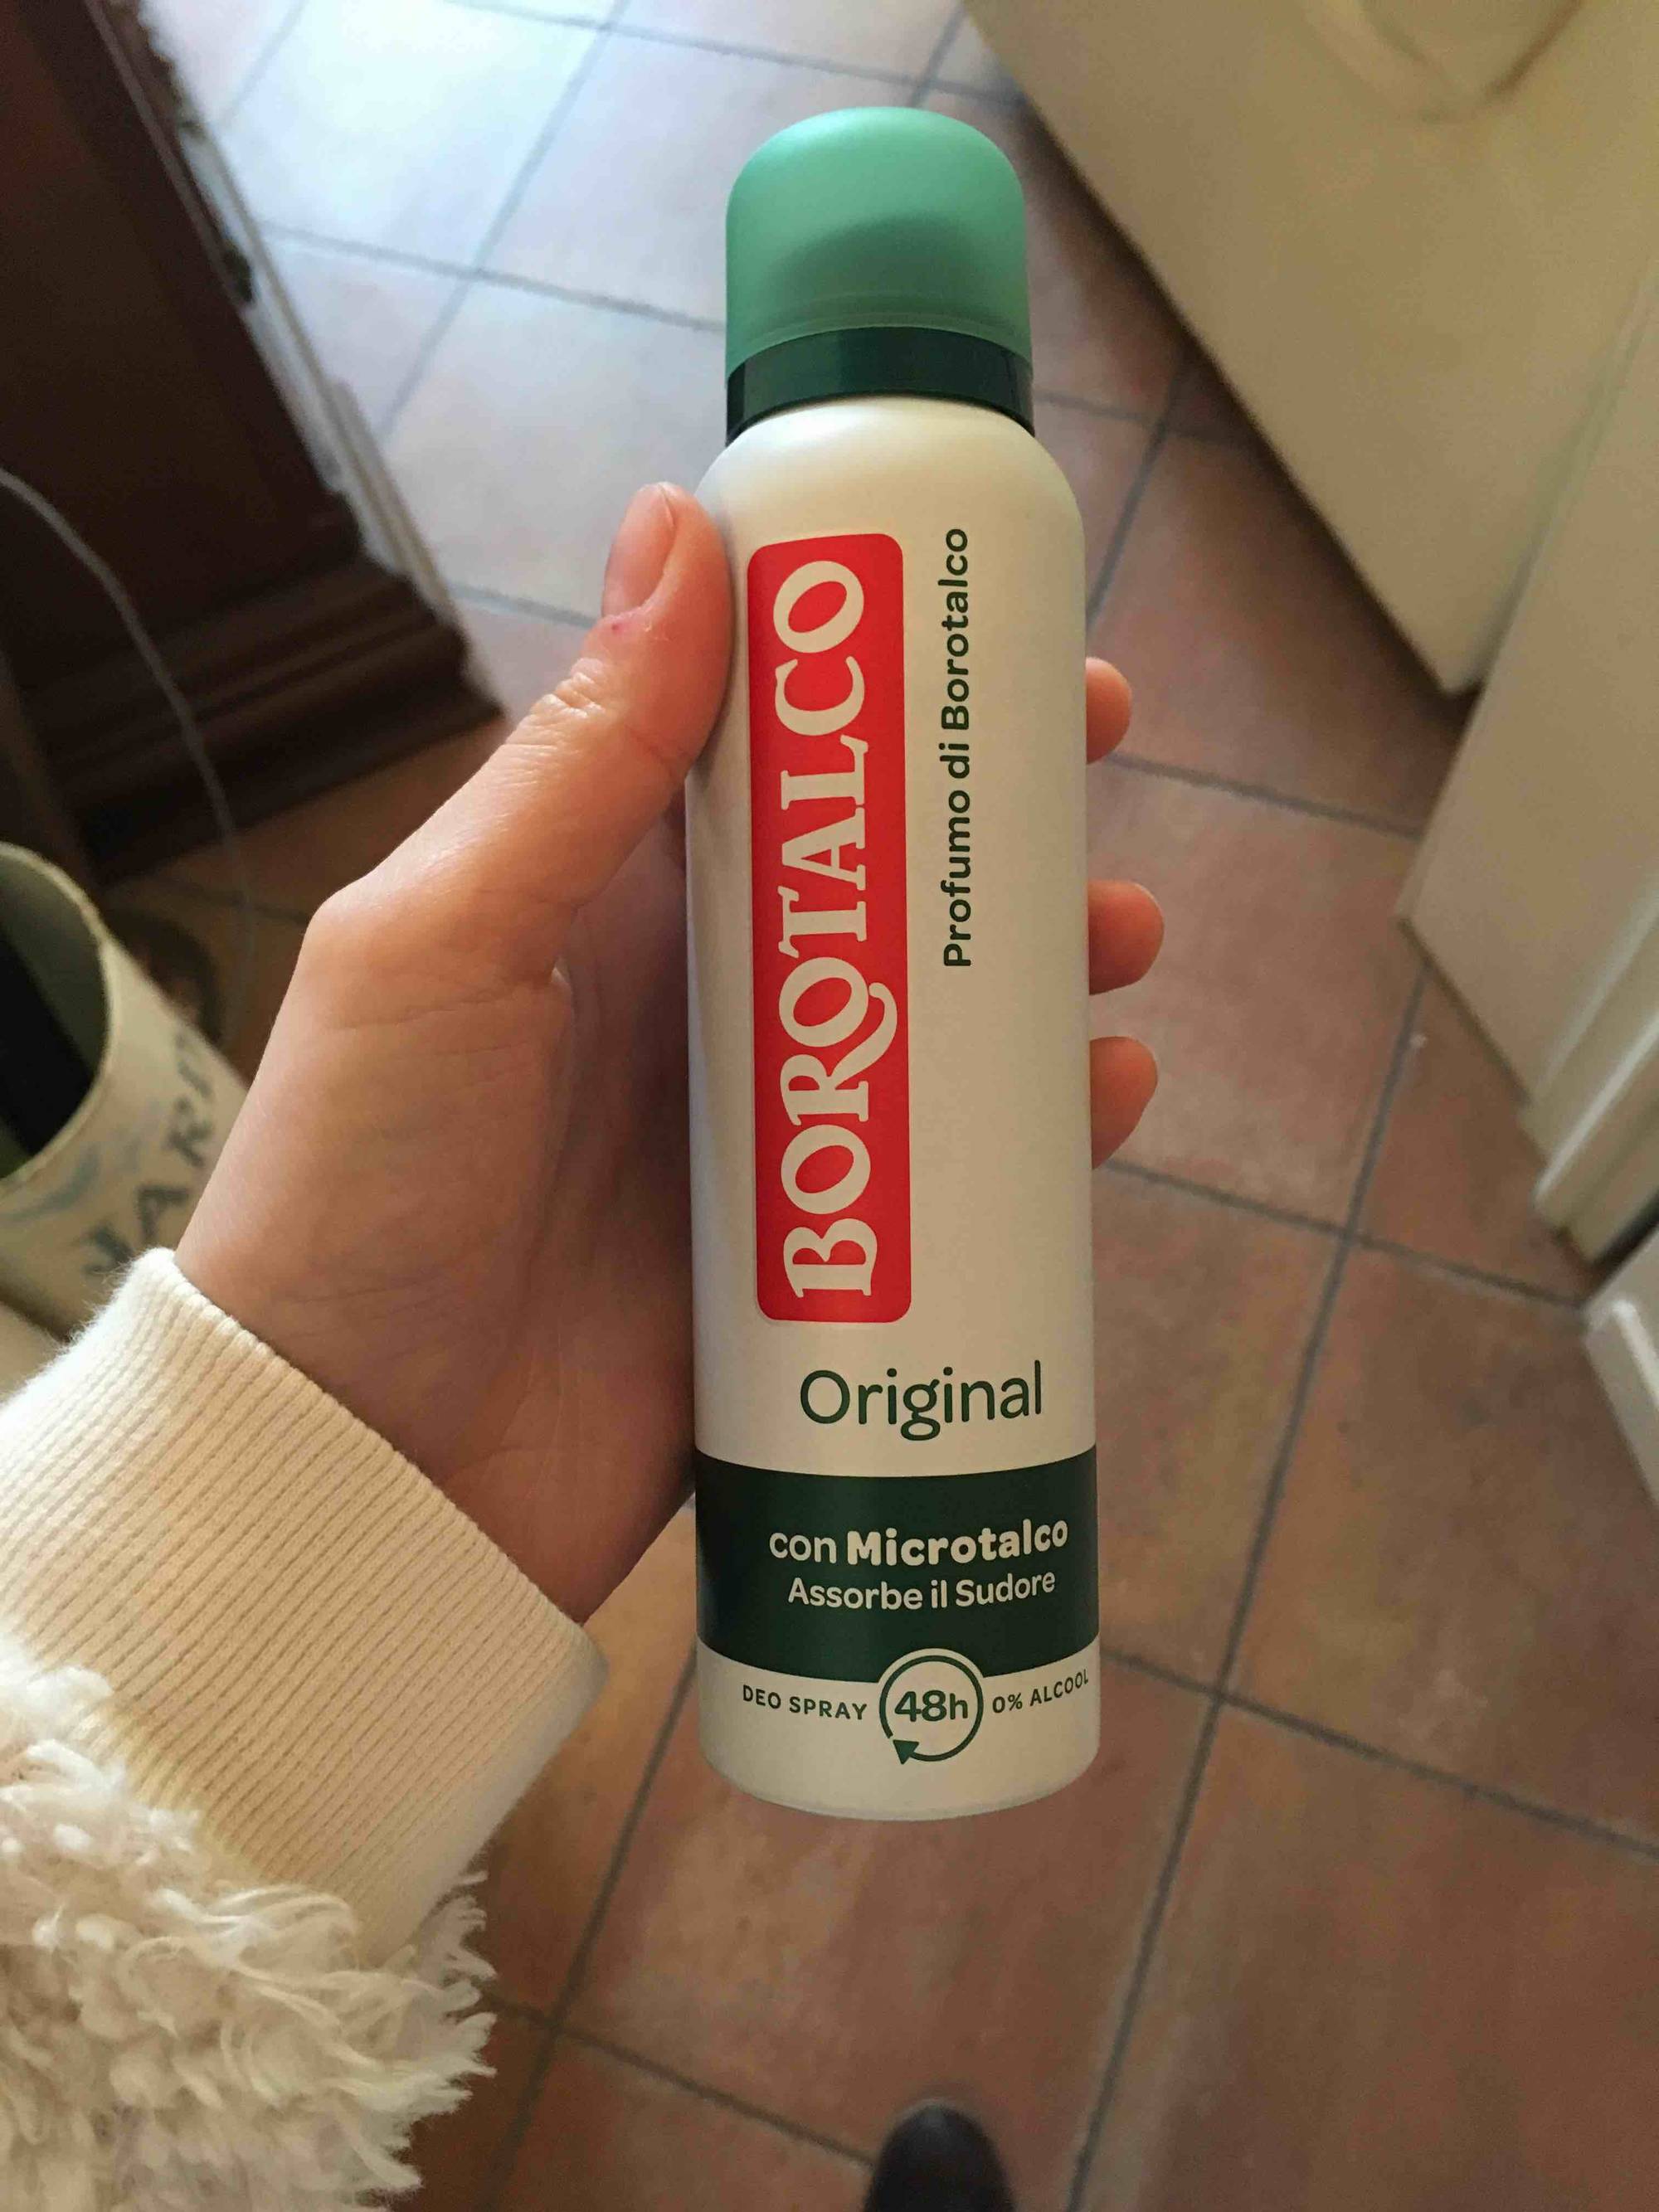 BOROTALCO - Original - Deo spray 48h